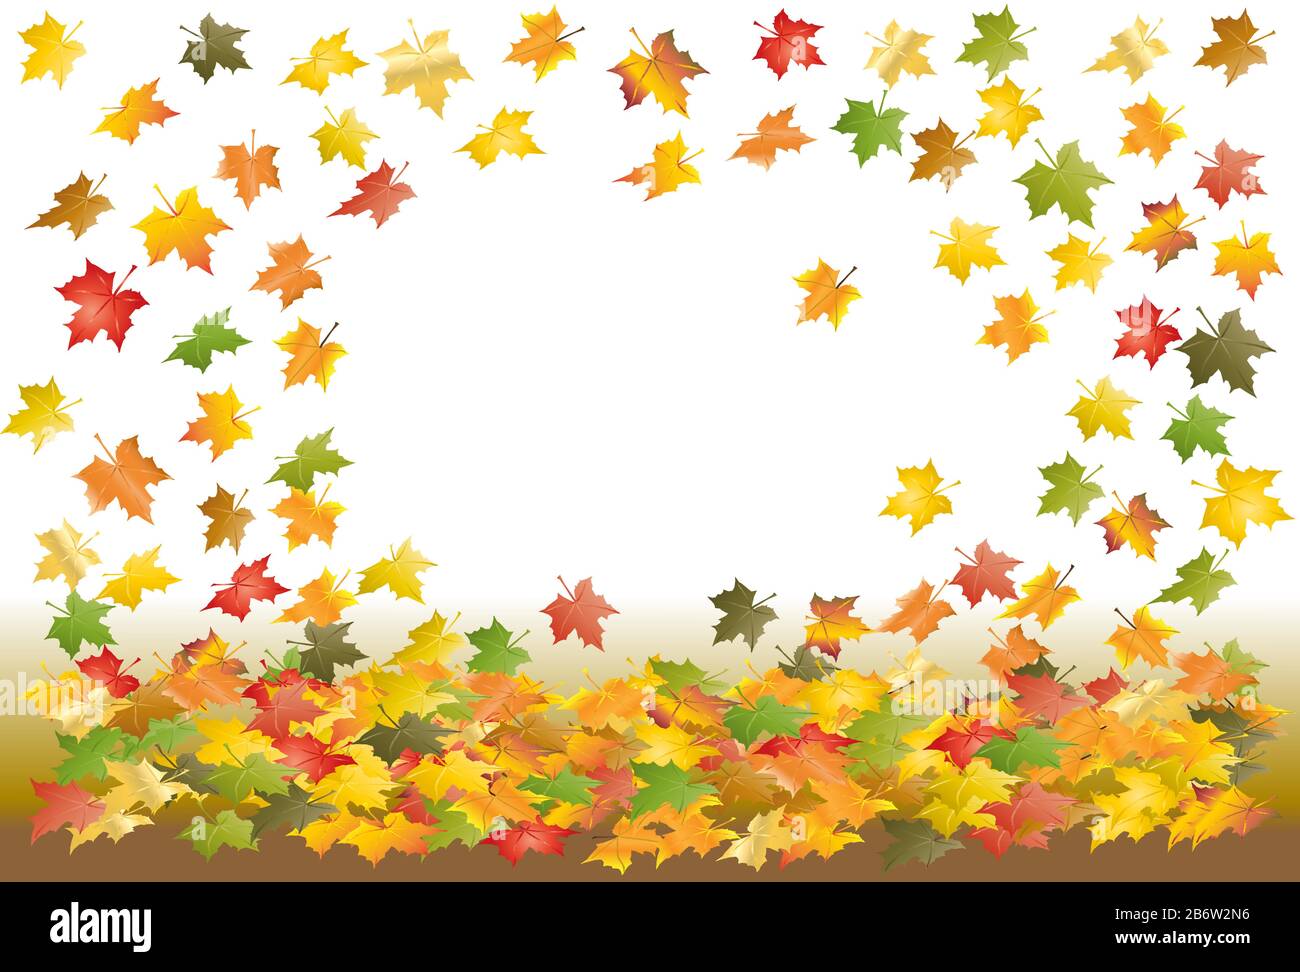 foglie di acero cadente di colore verde, rosso, giallo, arancione e forme diverse su sfondo bianco-marrone, sfondo autunno. cornice foglia Illustrazione Vettoriale